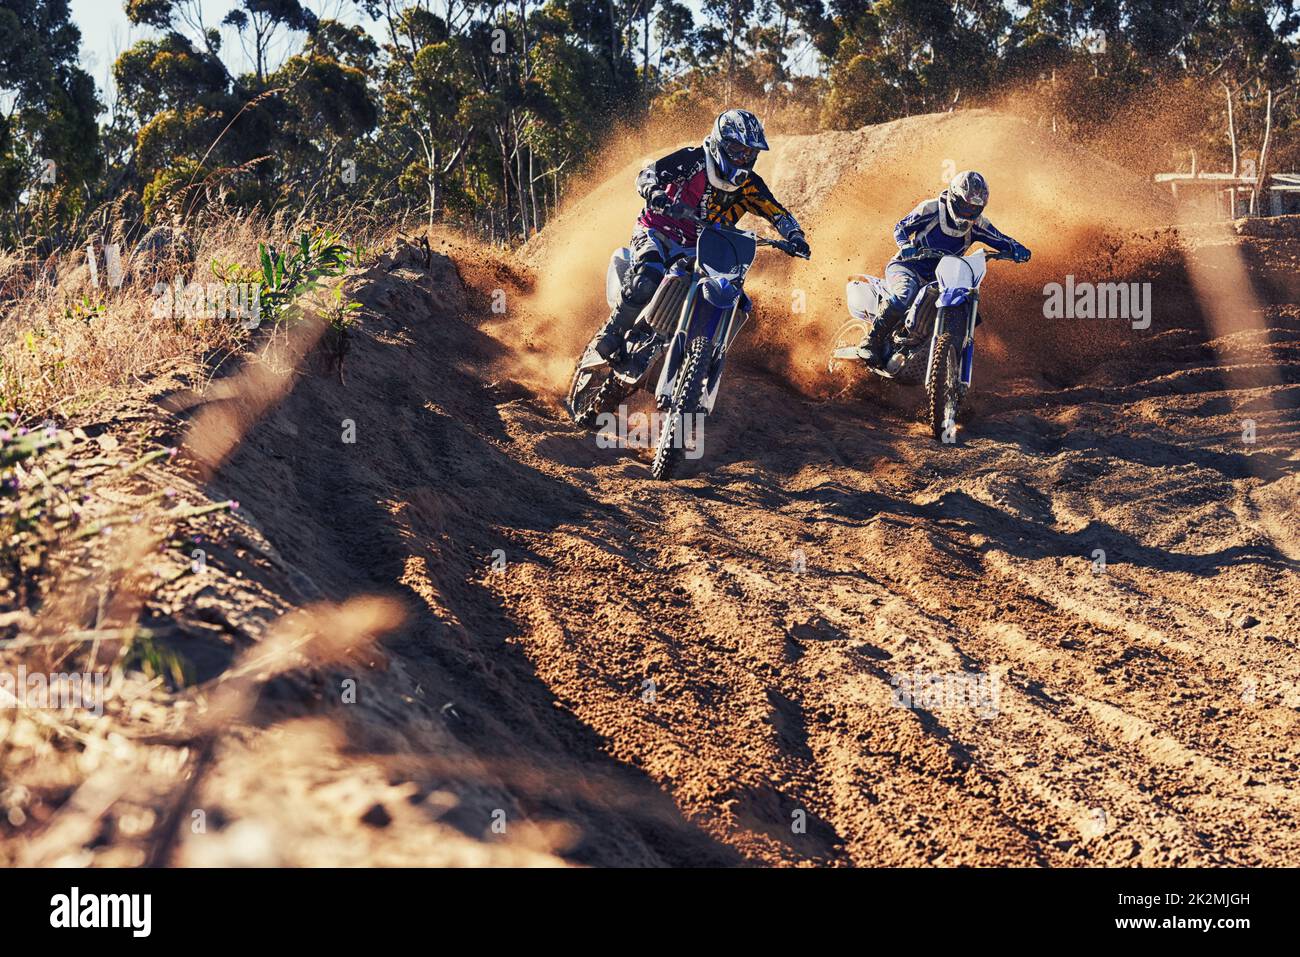 Es ist an der Zeit, diesen Track aufzureißen. Aufnahme von zwei Motocross-Rennern in Aktion. Stockfoto